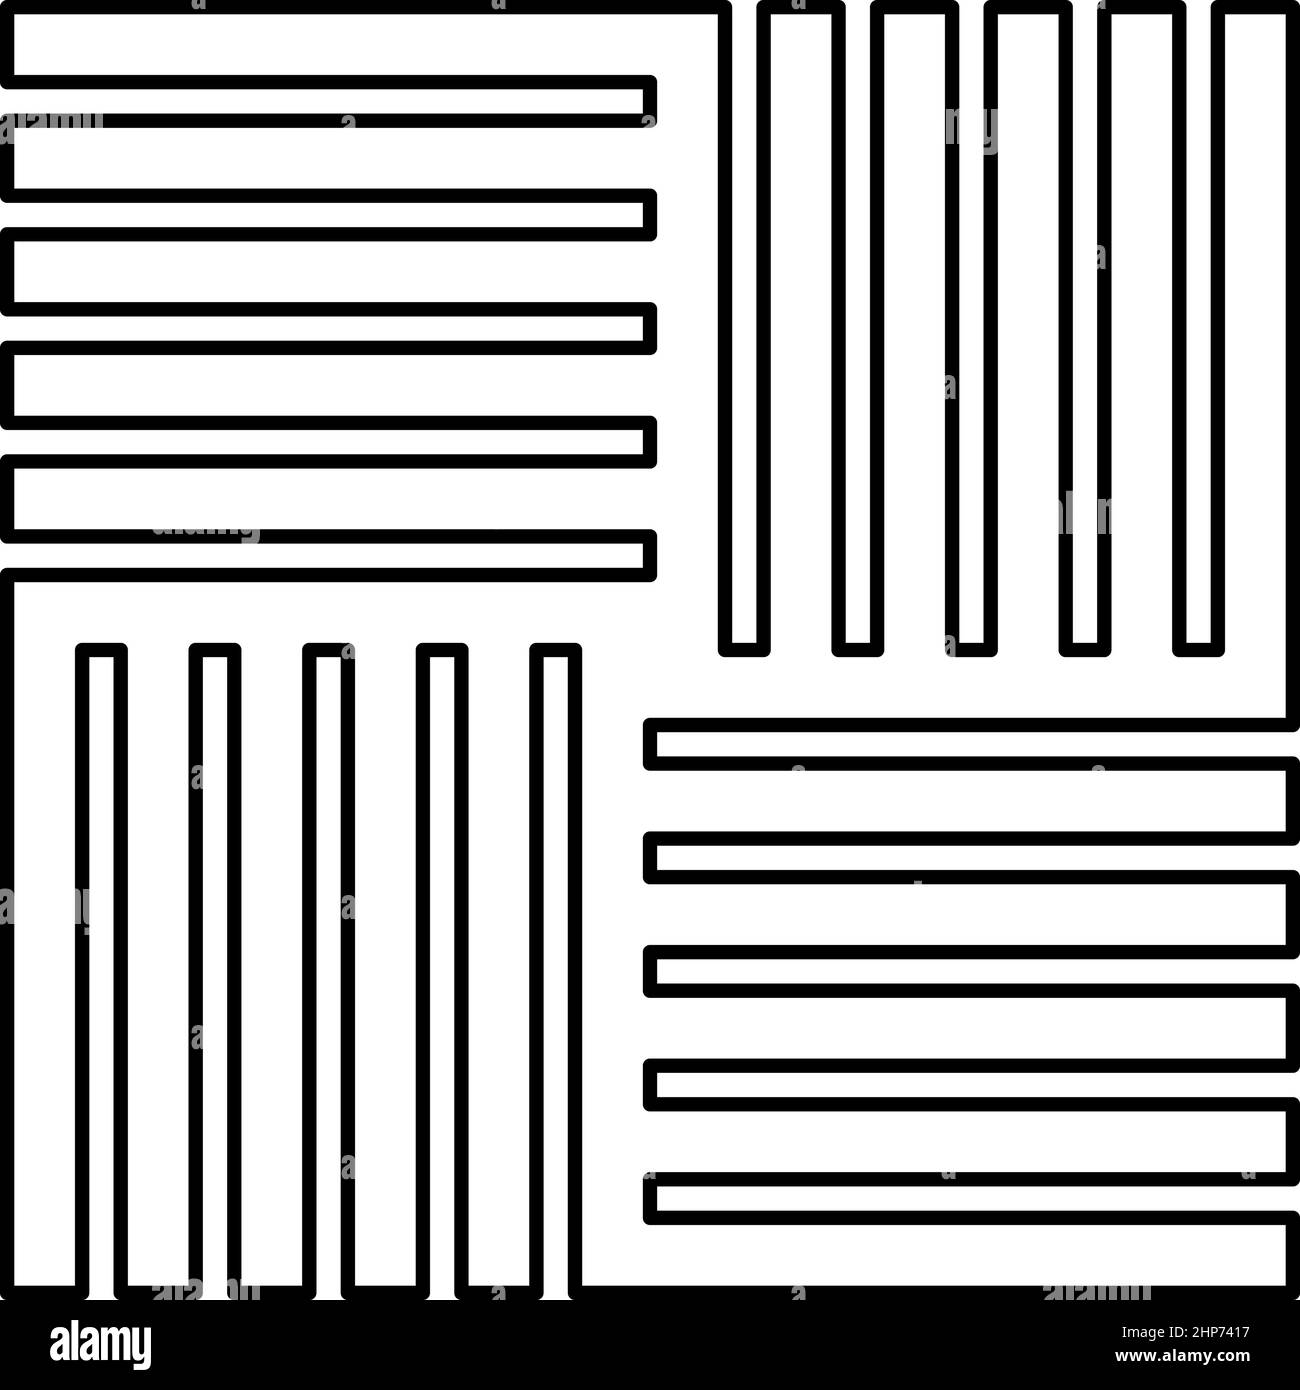 Carreau de forme carrée parquet matériau de plancher en bois laminé planche panneau de dalle contour icône couleur noire vecteur illustration image de style plat Illustration de Vecteur